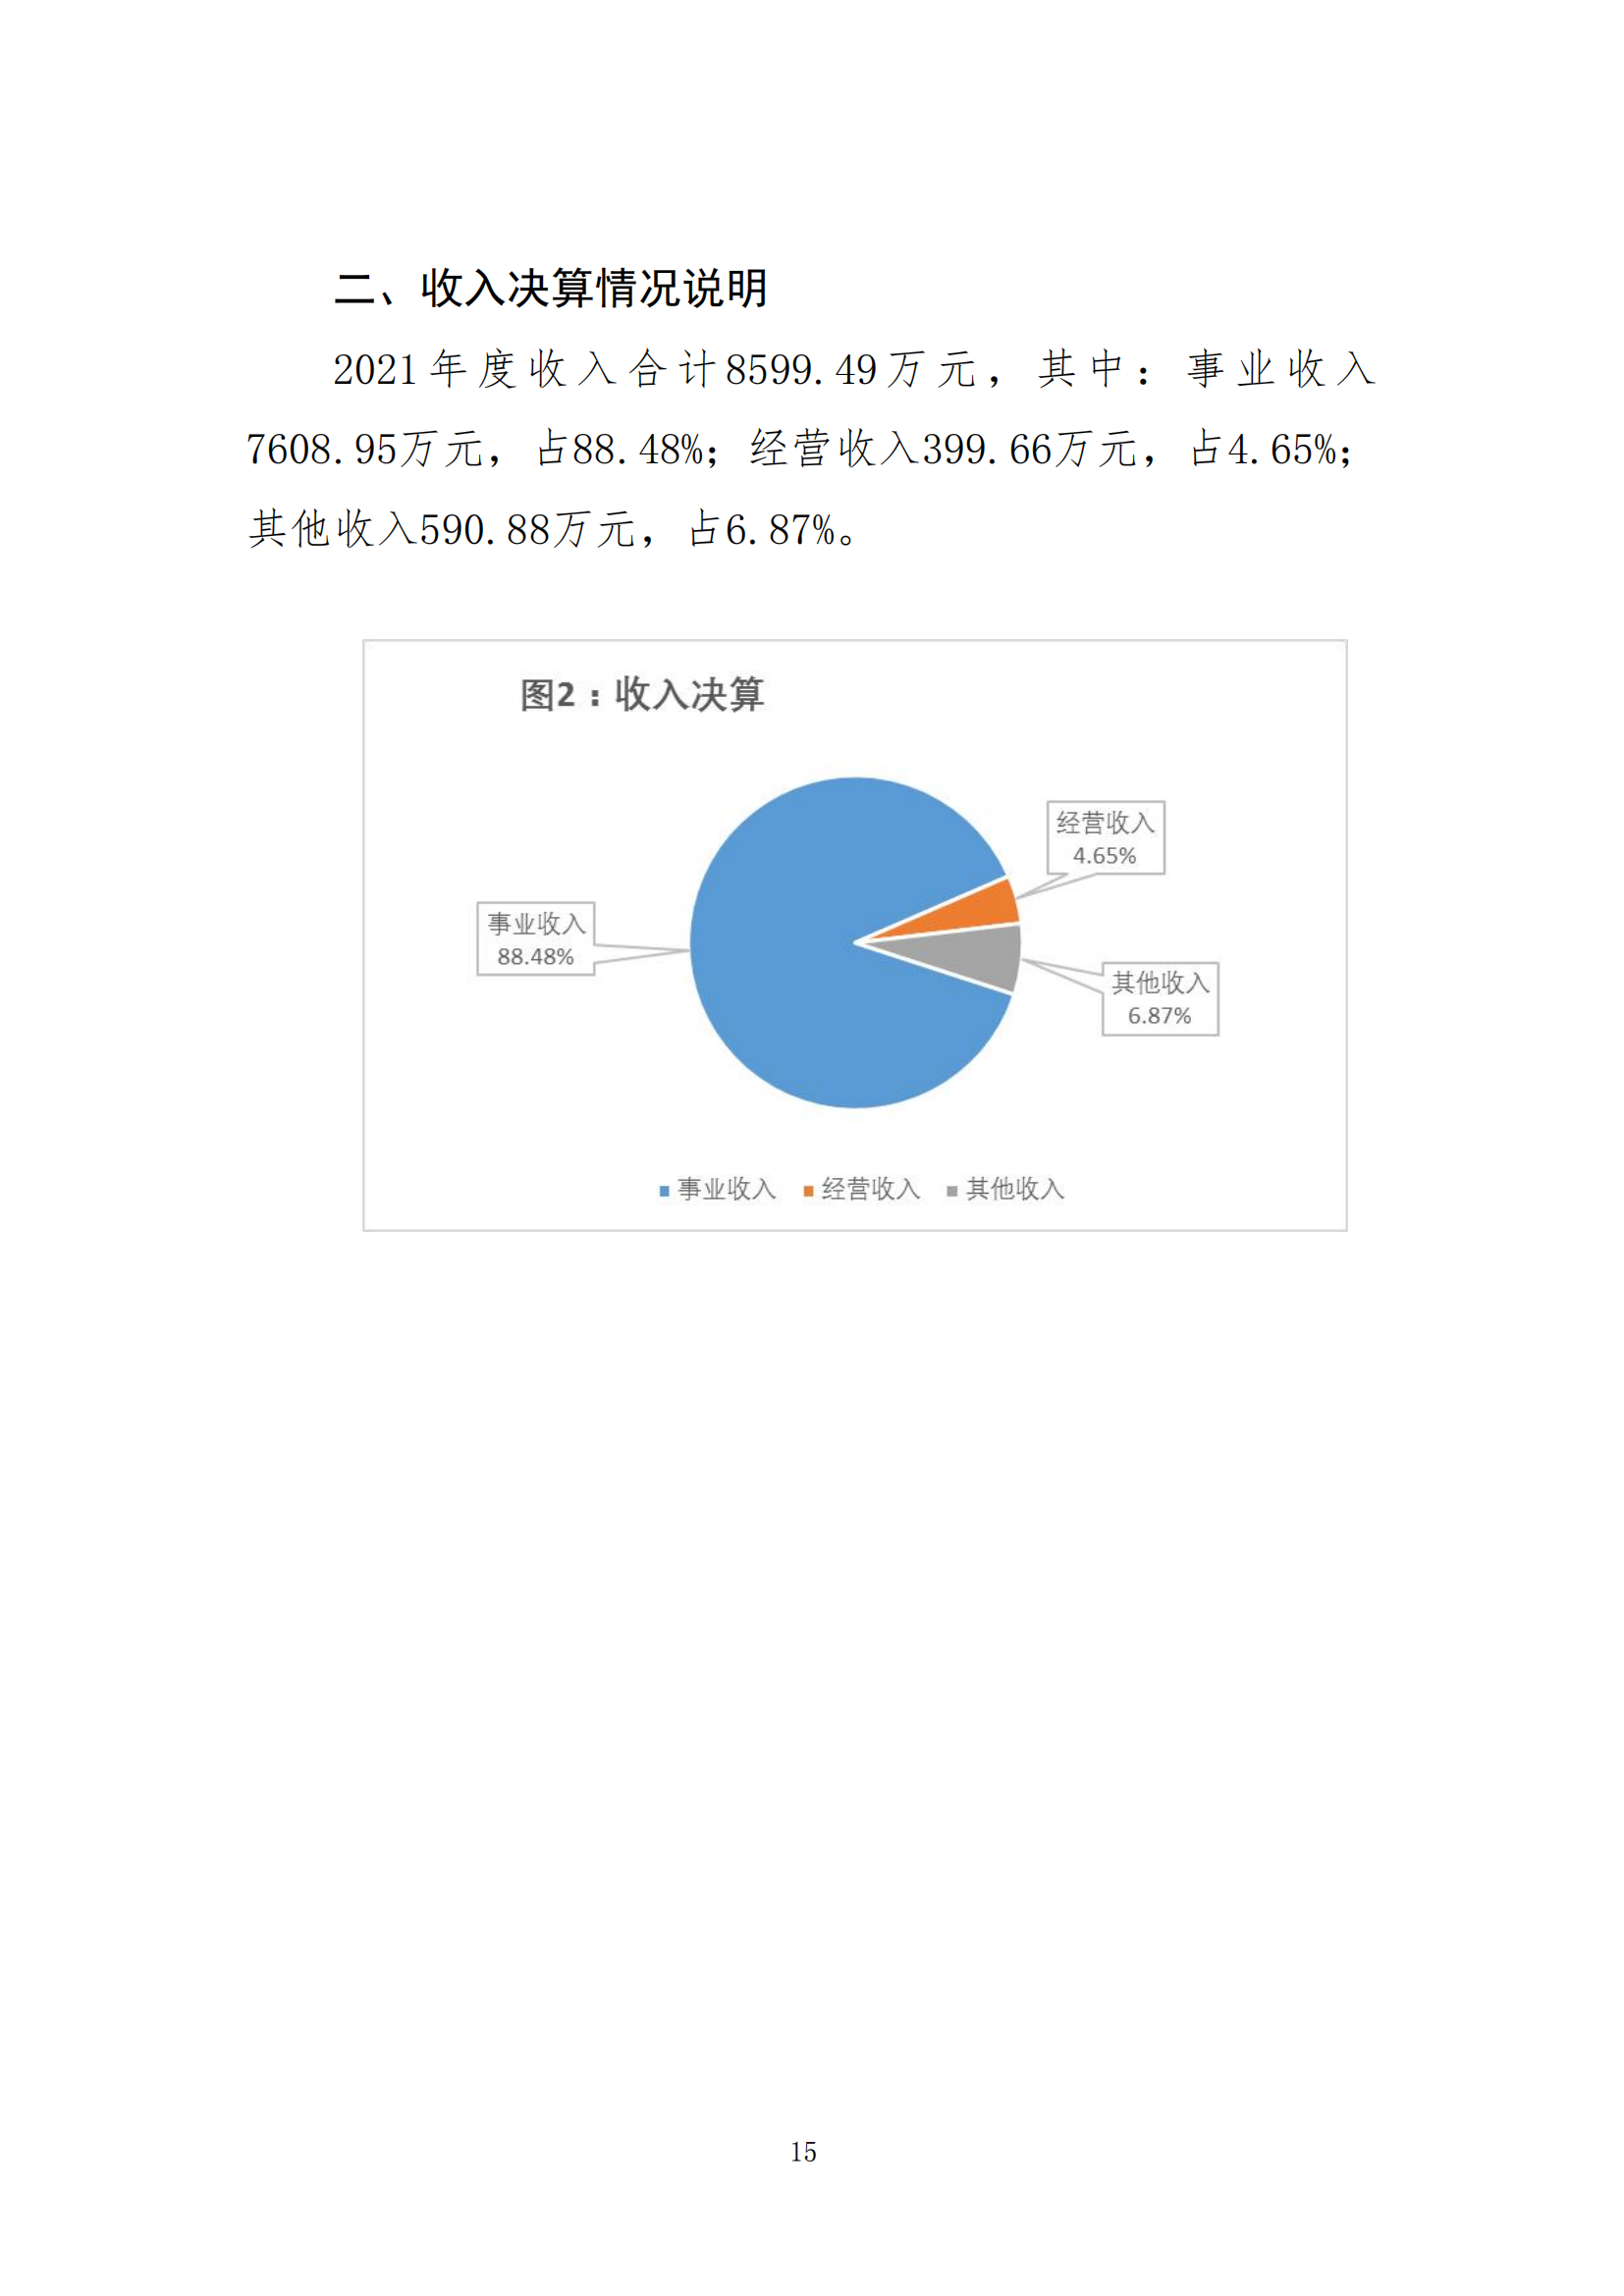 中国财政杂志社2021年度决算公开(8月10日周三统一公开）_17.png